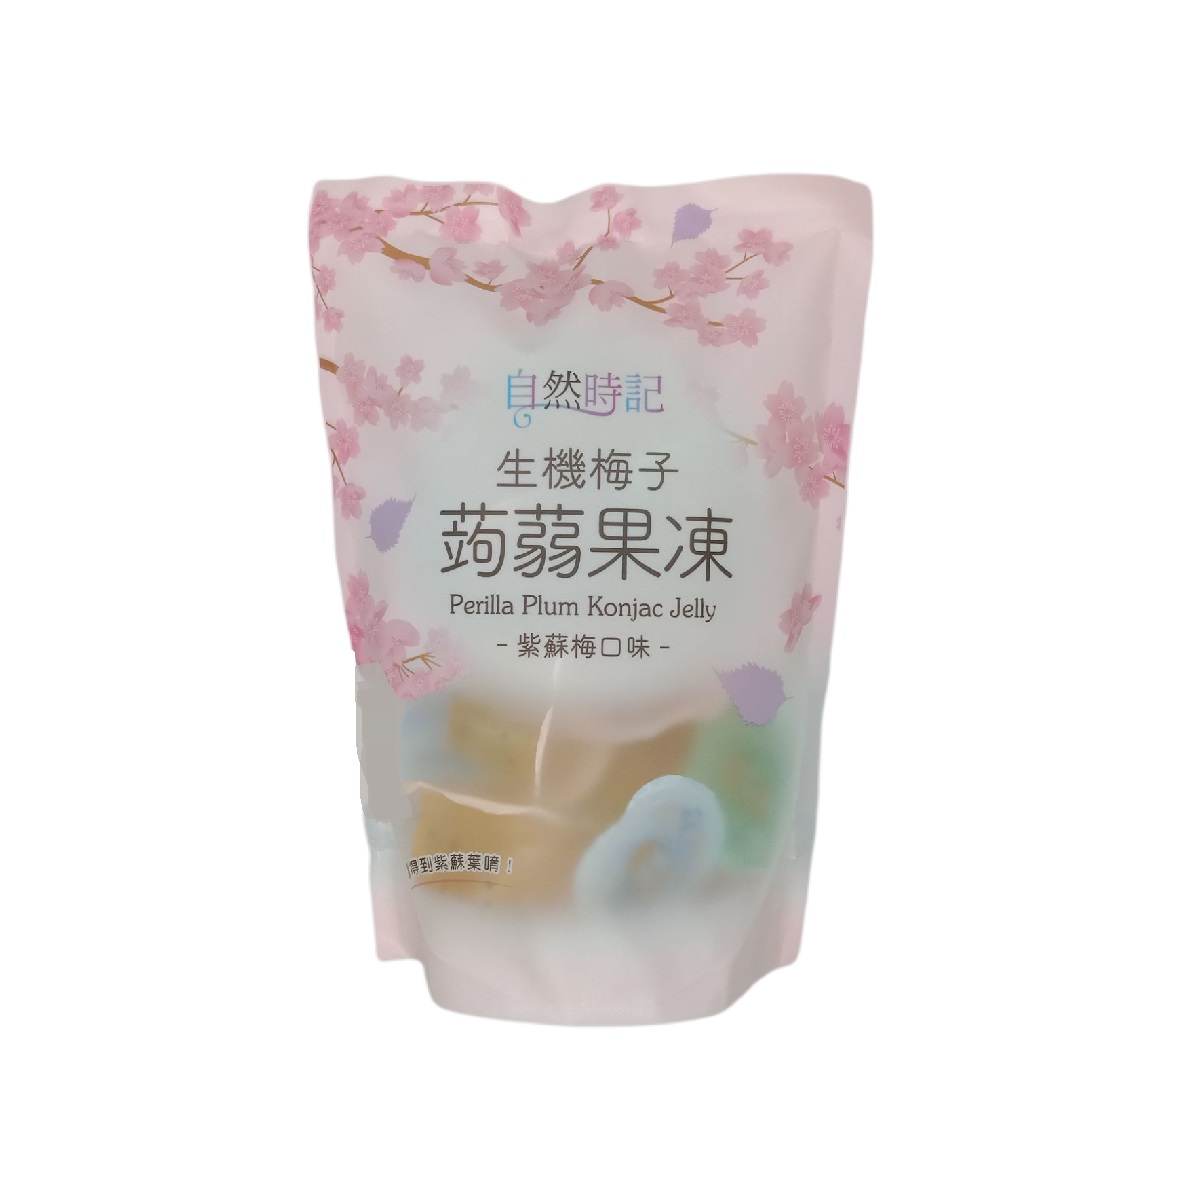 生機梅子蒟蒻果凍(紫蘇梅口味)